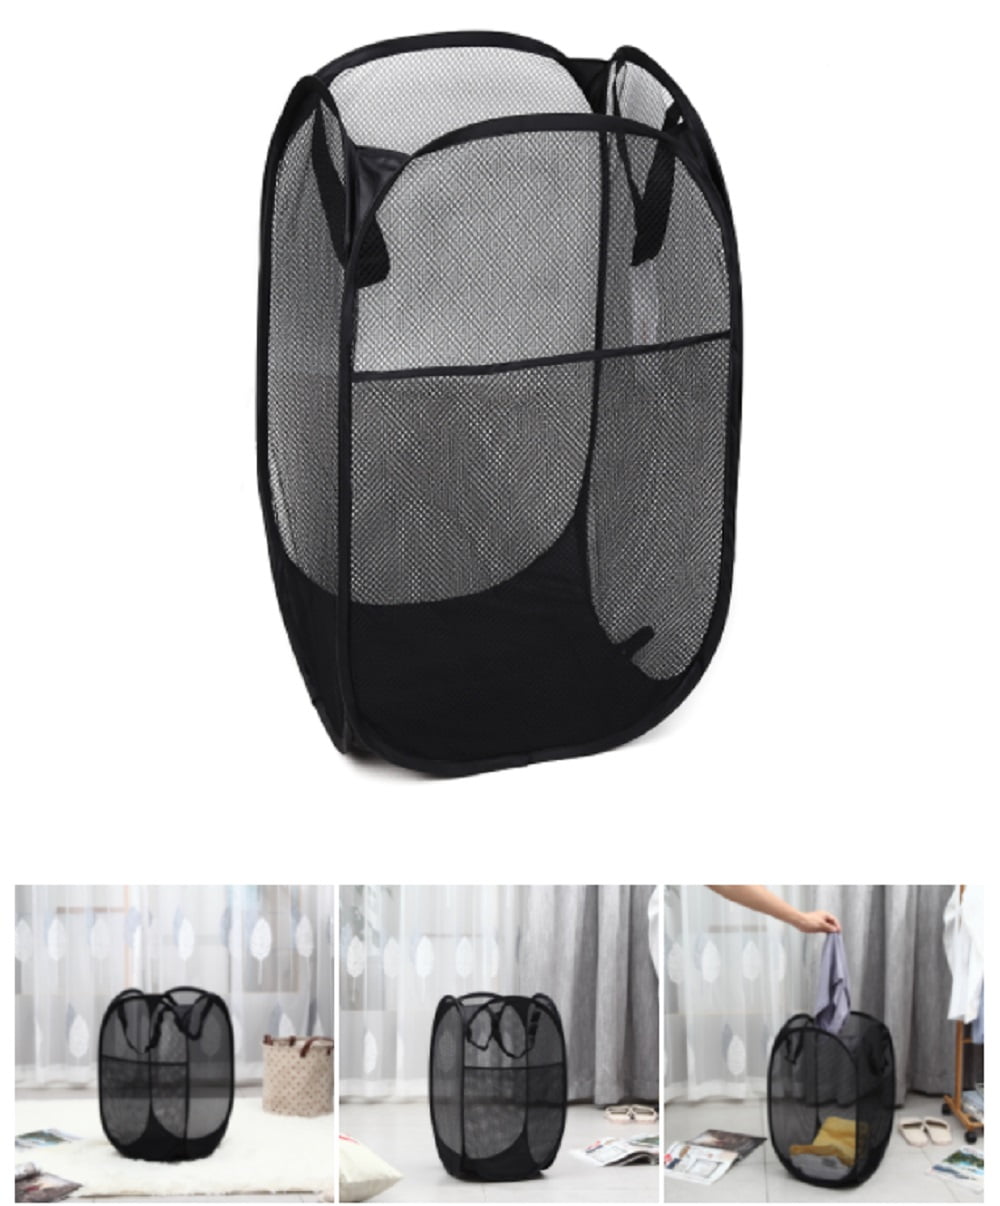 Details about   Large Storage Foldable Laundry Hamper Clothes Basket Laundry Washing Bag Nylon 